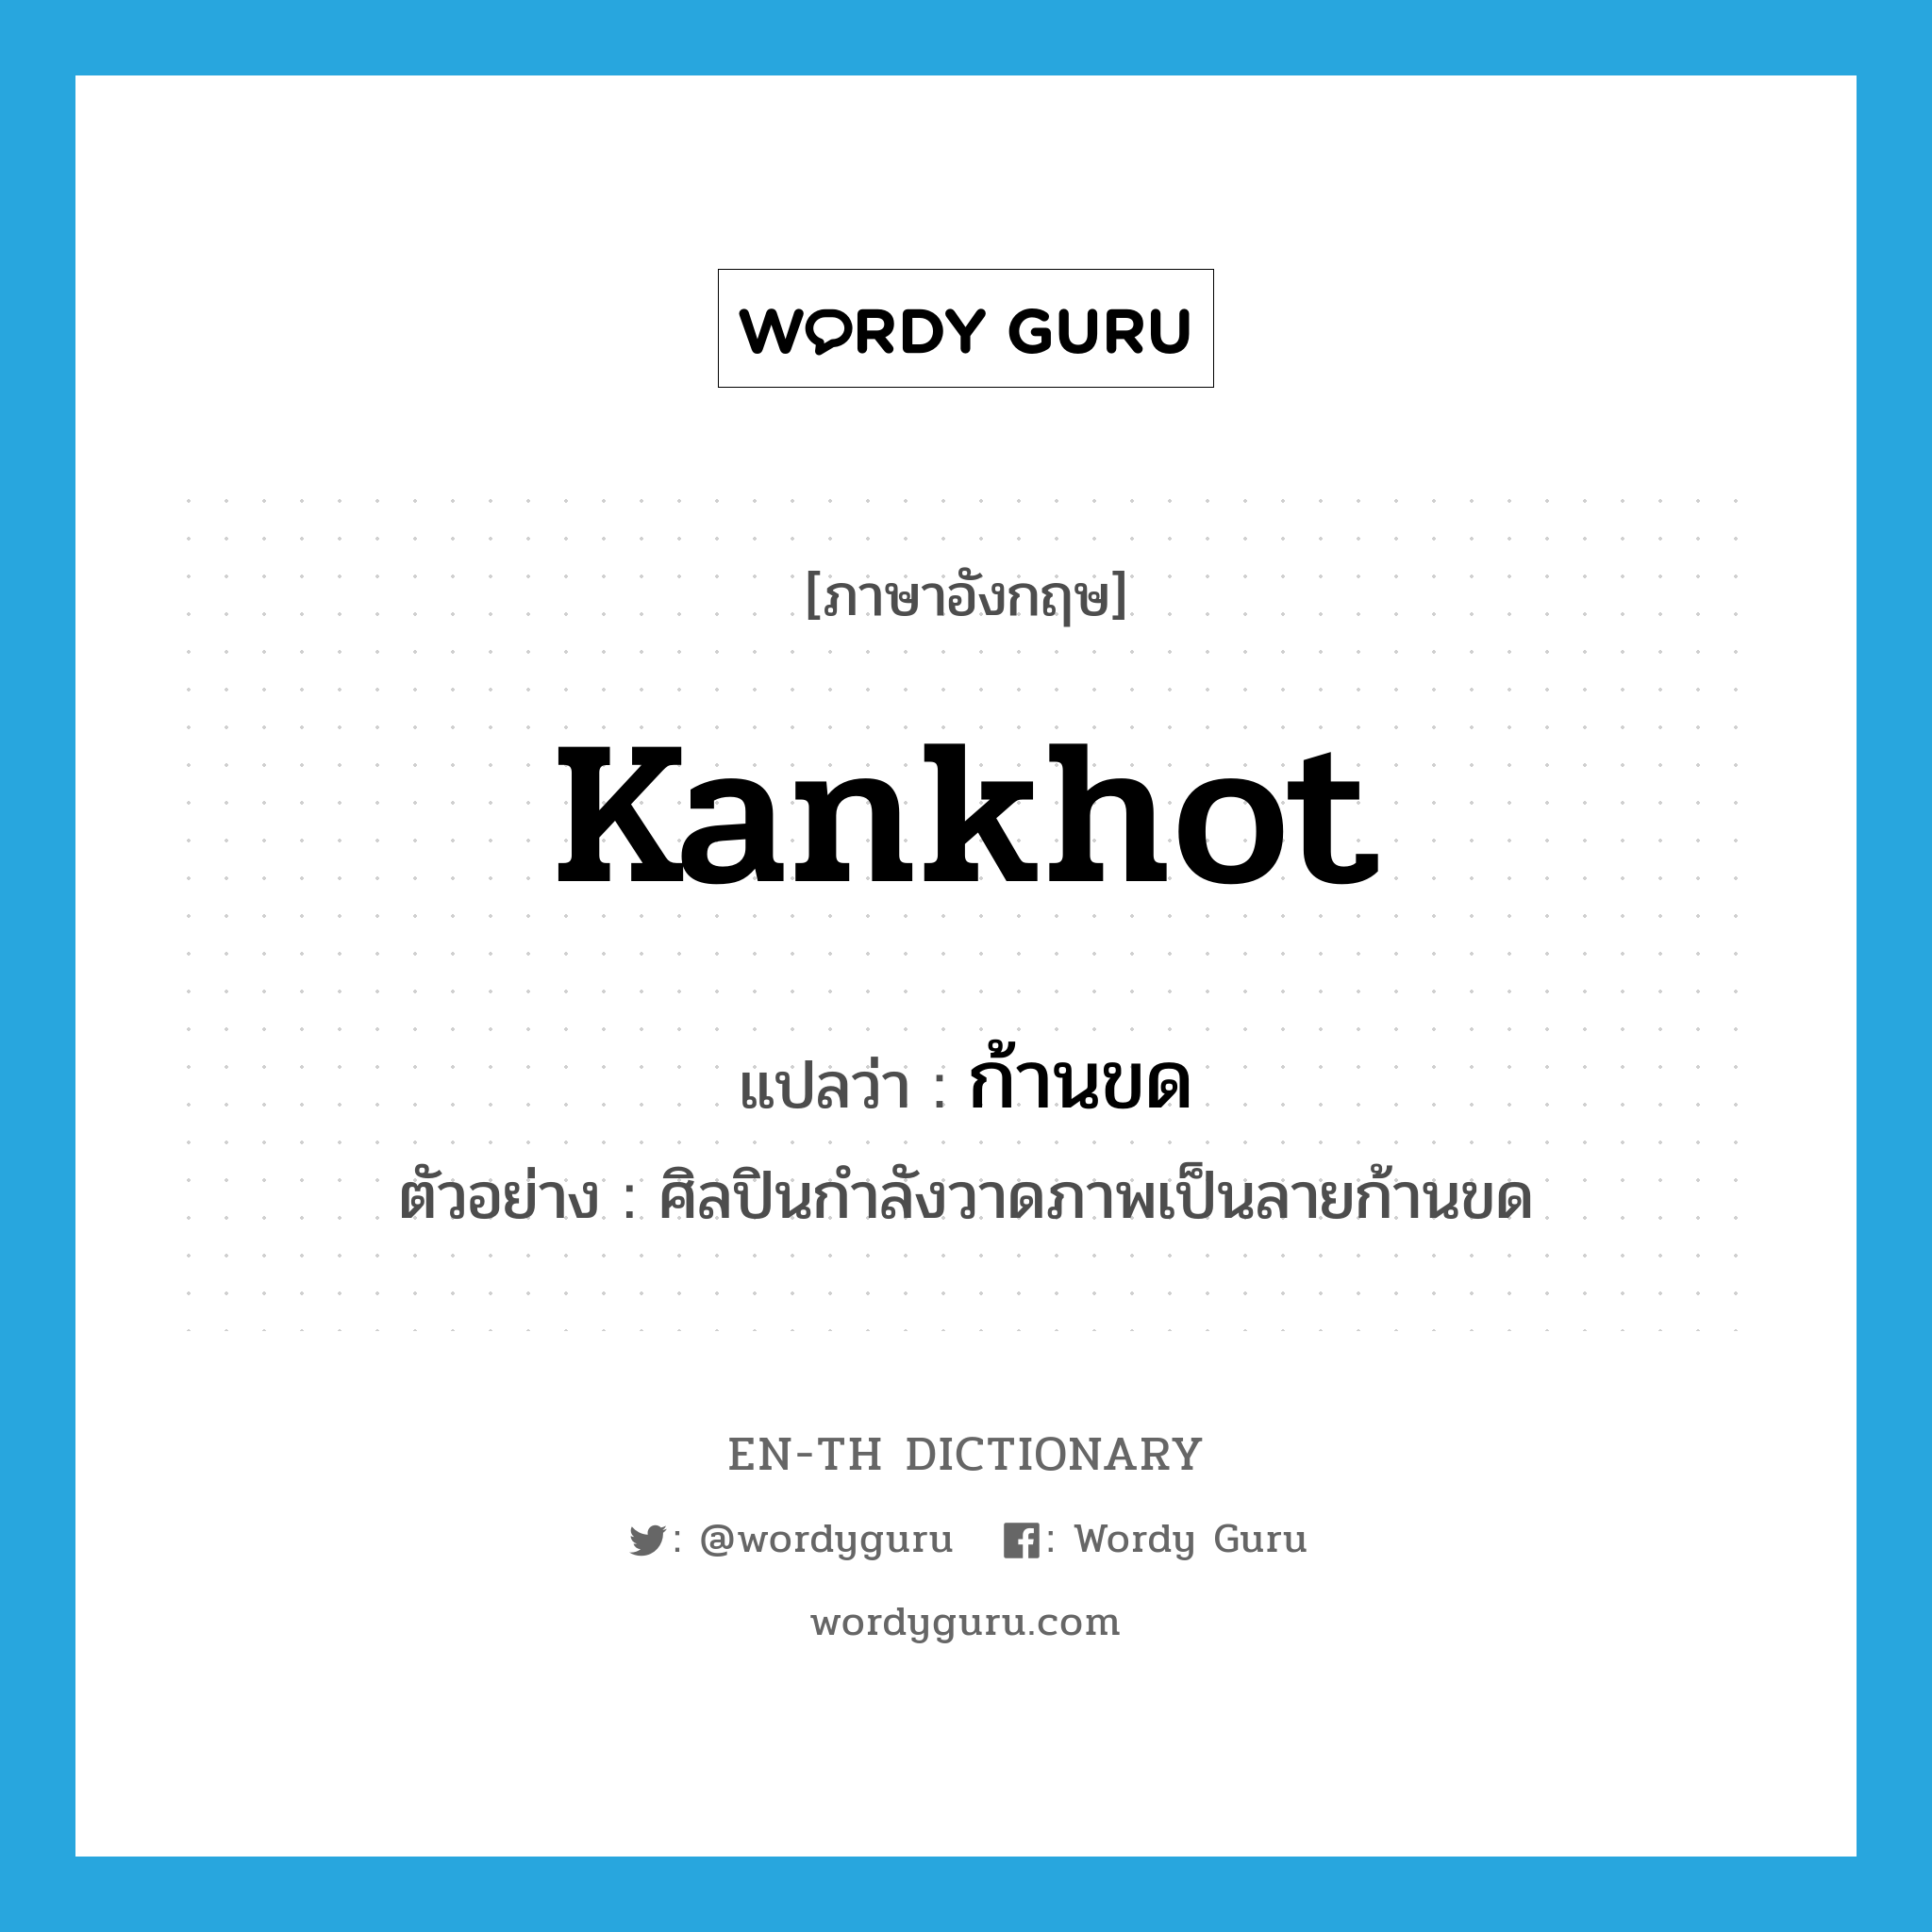 Kankhot แปลว่า?, คำศัพท์ภาษาอังกฤษ Kankhot แปลว่า ก้านขด ประเภท N ตัวอย่าง ศิลปินกำลังวาดภาพเป็นลายก้านขด หมวด N